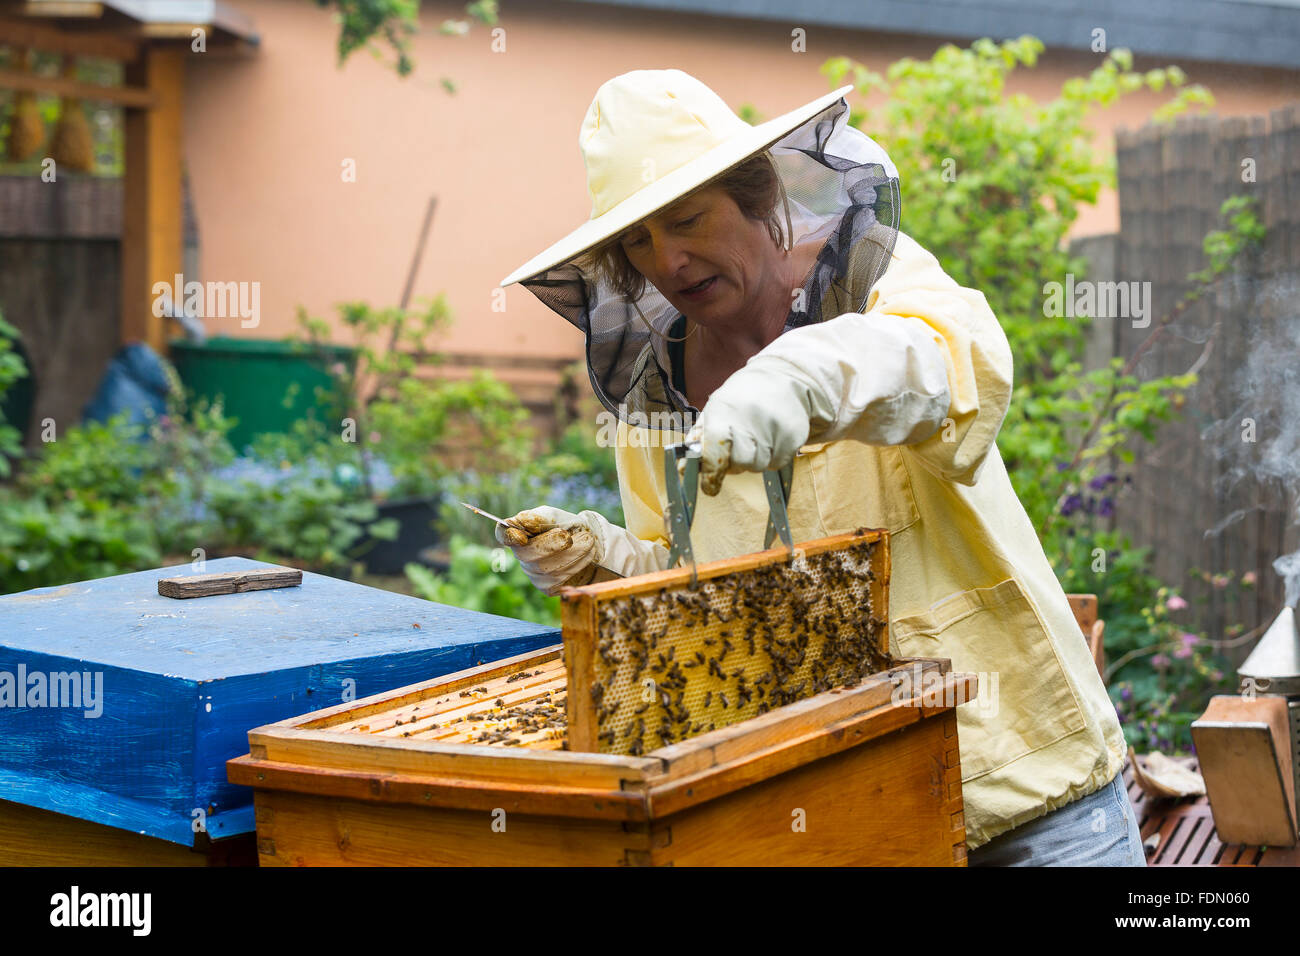 El apicultor tendiendo beehive, Unión de las abejas (Apis mellifera), Alemania Foto de stock